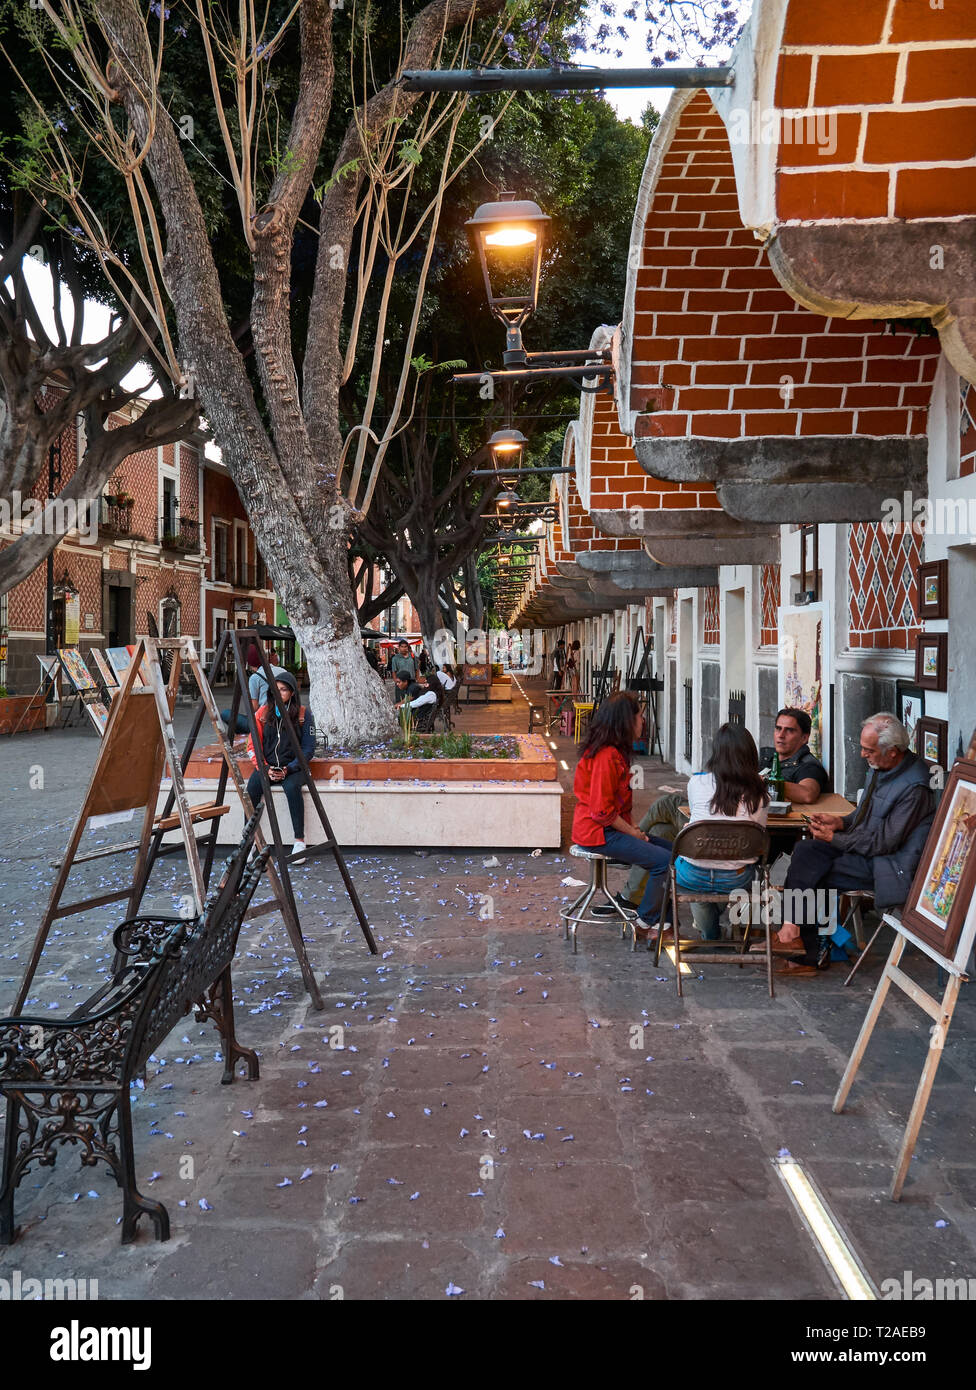 Alte Straße mit Künstlern, Workshops und Gemälde im Mexikanischen Künstler Viertel, Barrio Del Artista, Calle 8 Norte, Puebla, Mexiko Stockfoto